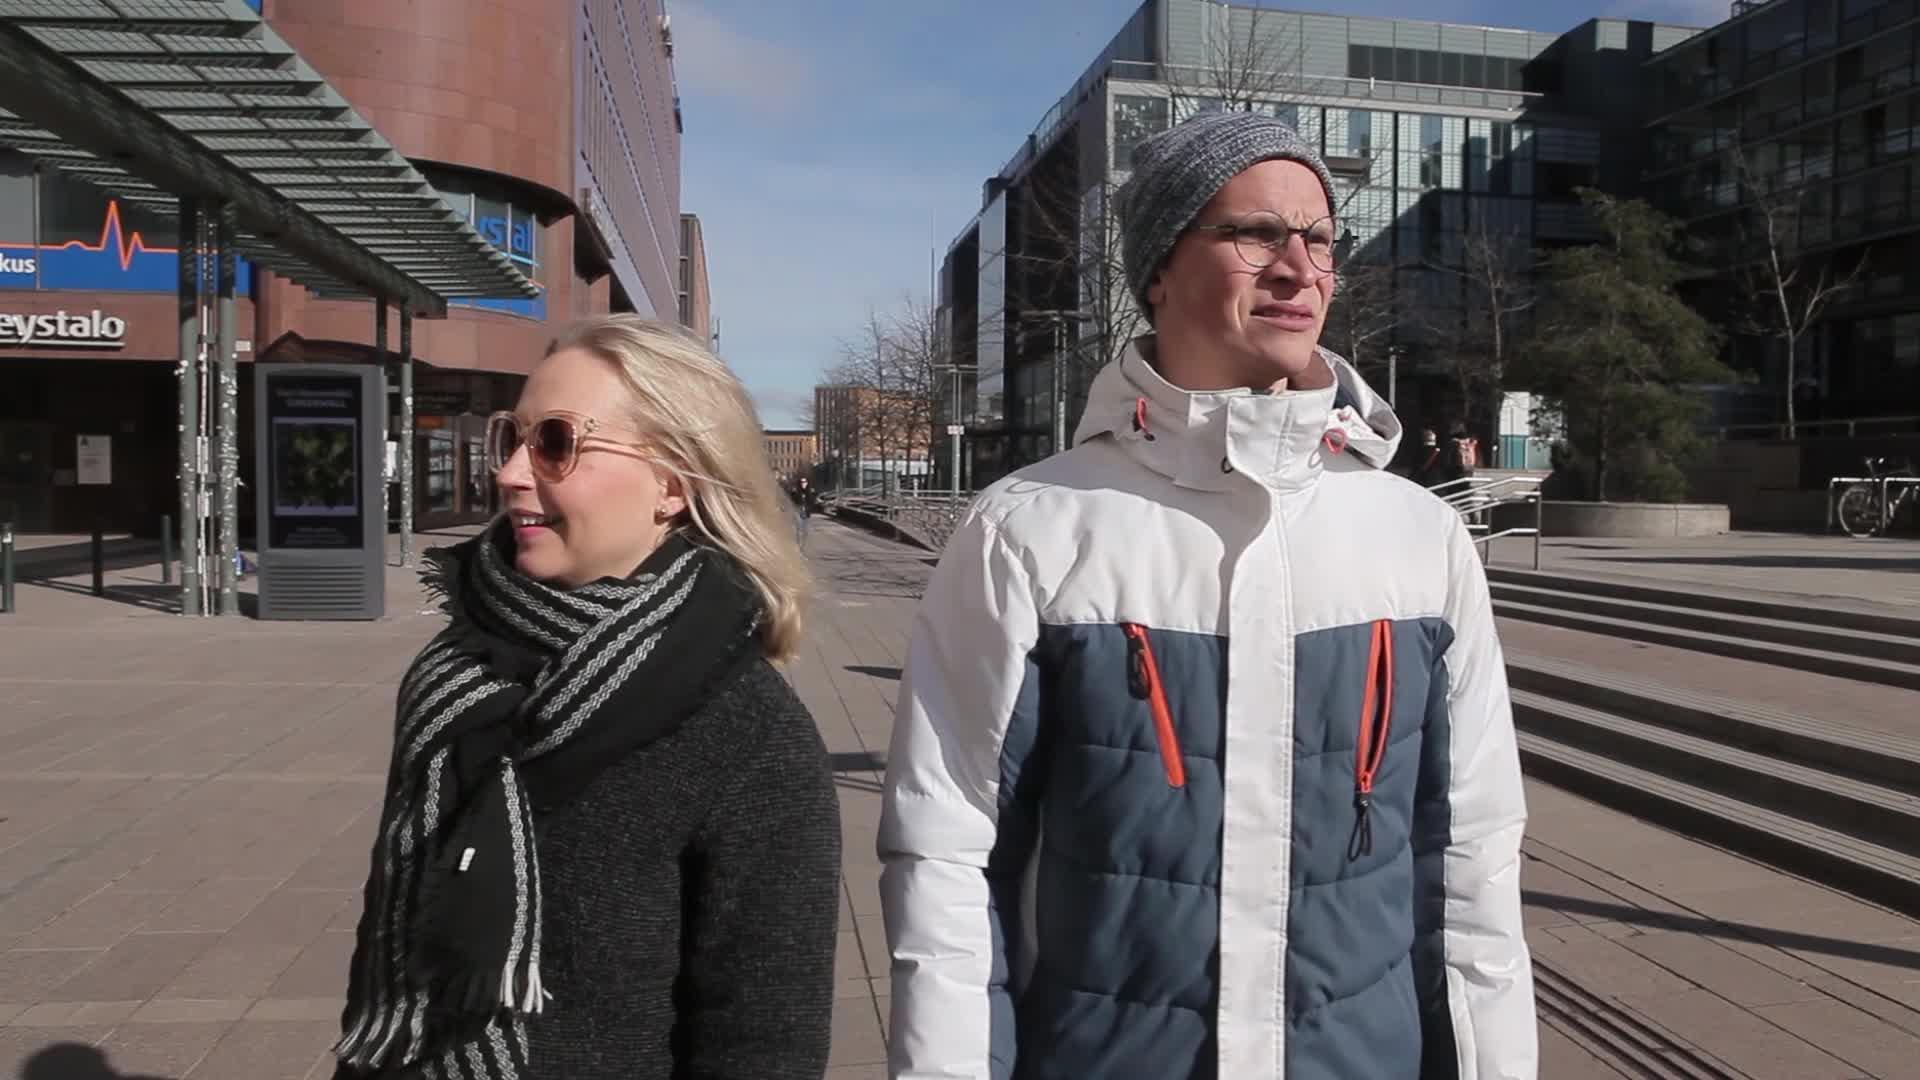 Krisse ja Riku käänsivät Suomen hauskin tavis -ohjelman idean päälaelleen: "Oot vetäny vessasta mun koomikon uran"